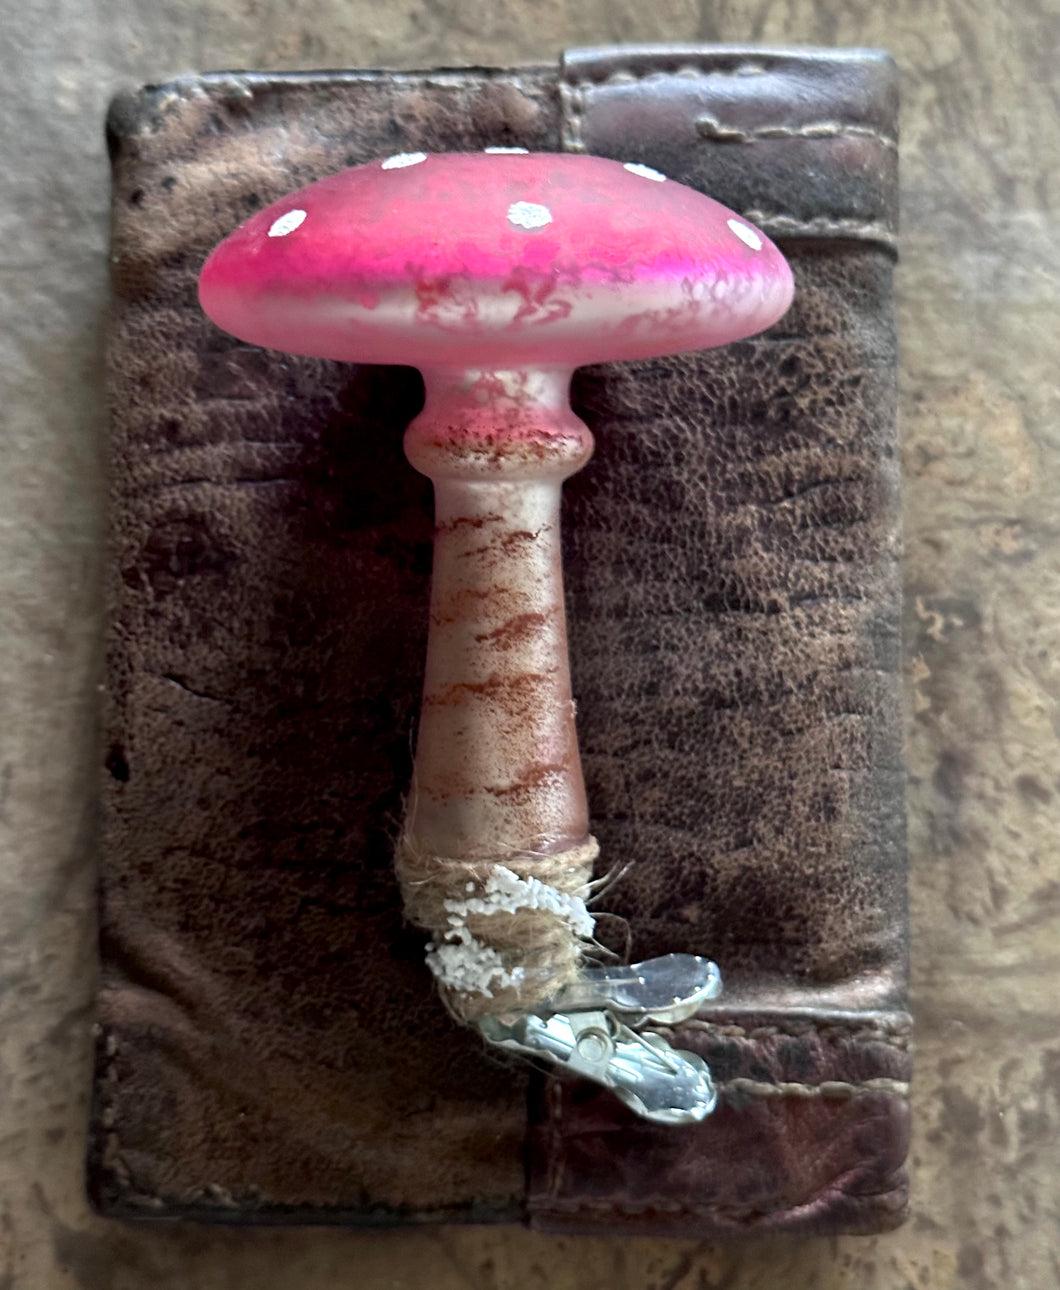 Mercury Glass Mushroom Ornament on a Clip - Hand Painted Amanita Mushroom